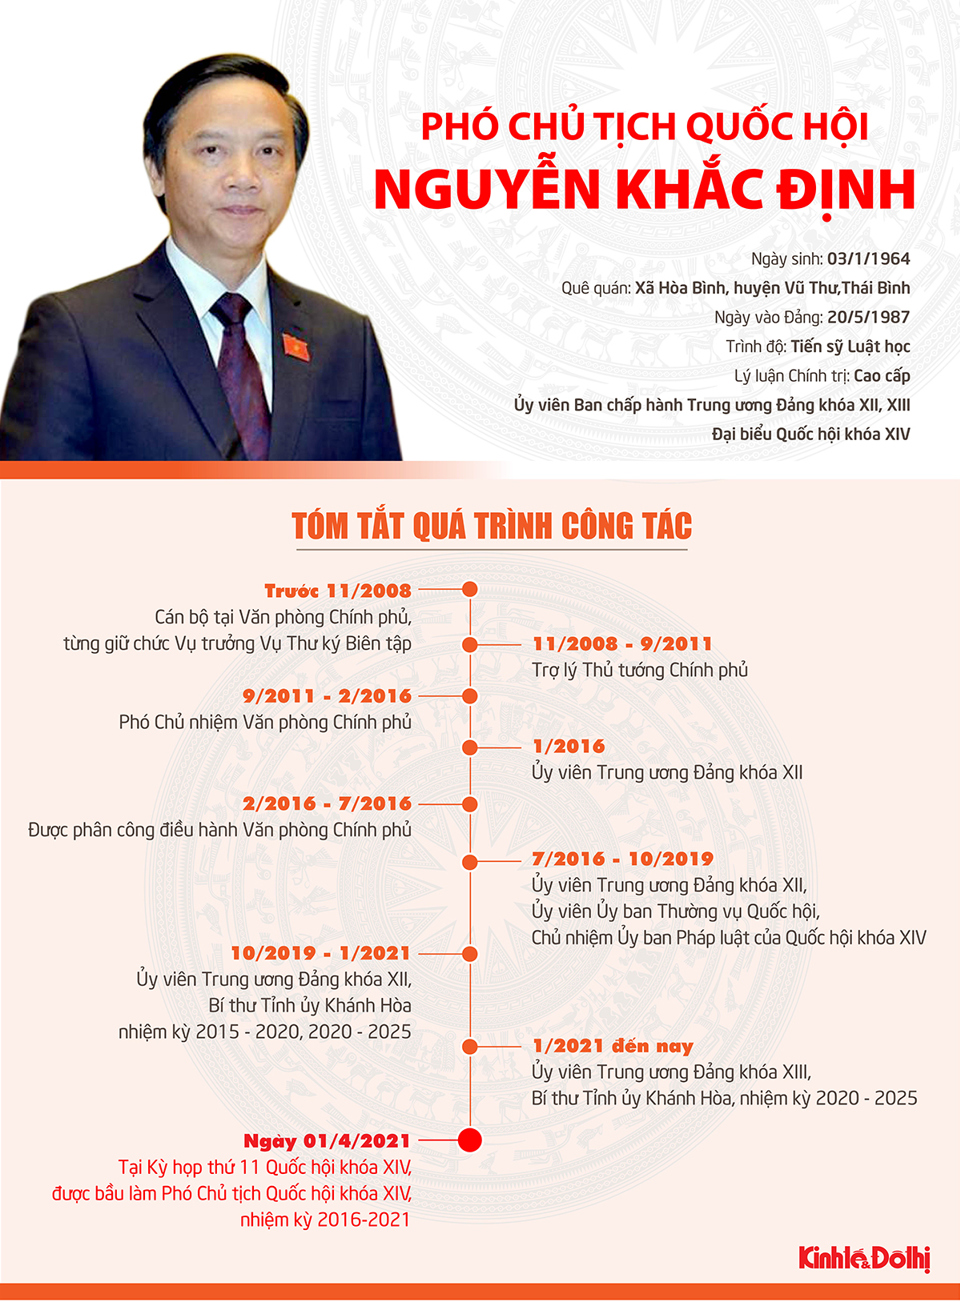 [Infographic] Tóm tắt quá trình công tác của tân Phó Chủ tịch Quốc hội Nguyễn Khắc Định - Ảnh 1